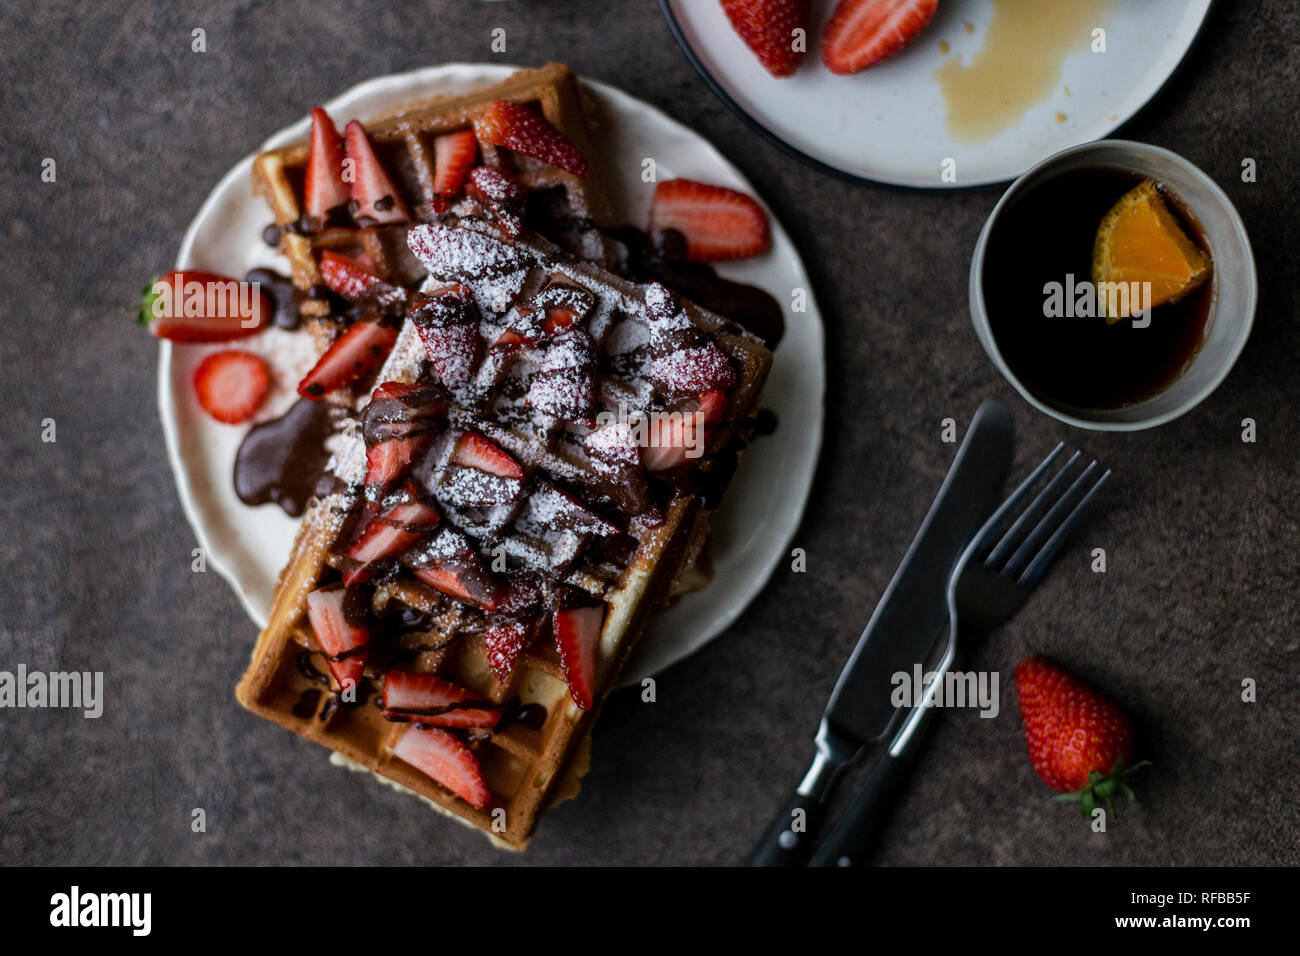 Petit-déjeuner romantique avec gaufres belges avec fraise et chocolat, avec deux tasses de thé au citron, près de fourchette et couteau à fond sombre. Concep Banque D'Images